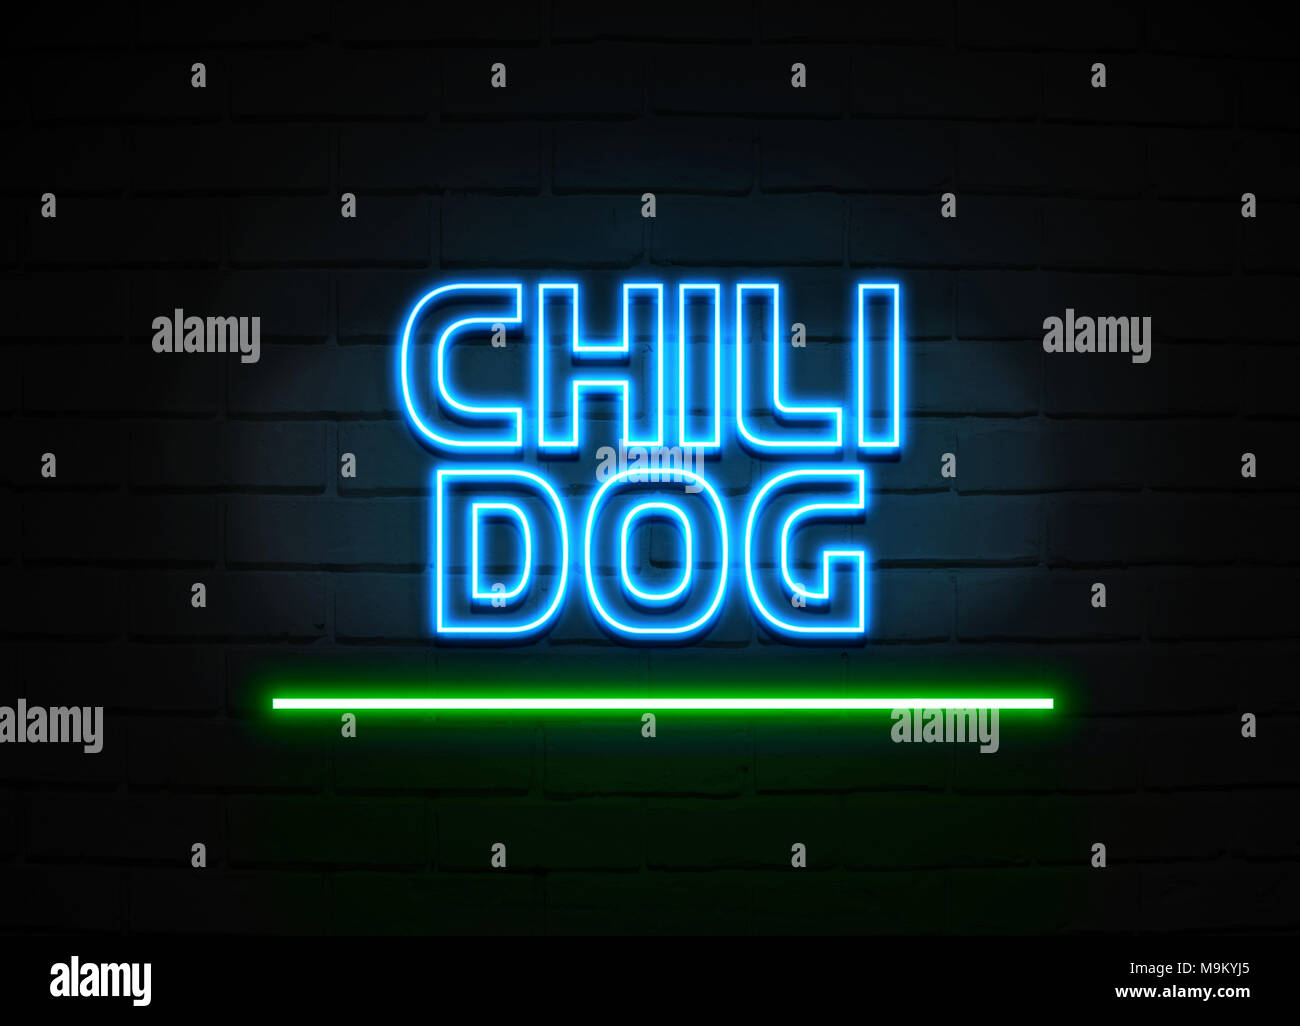 Chili Dog Leuchtreklame - glühende Leuchtreklame auf brickwall Wand - 3D-Royalty Free Stock Illustration dargestellt. Stockfoto